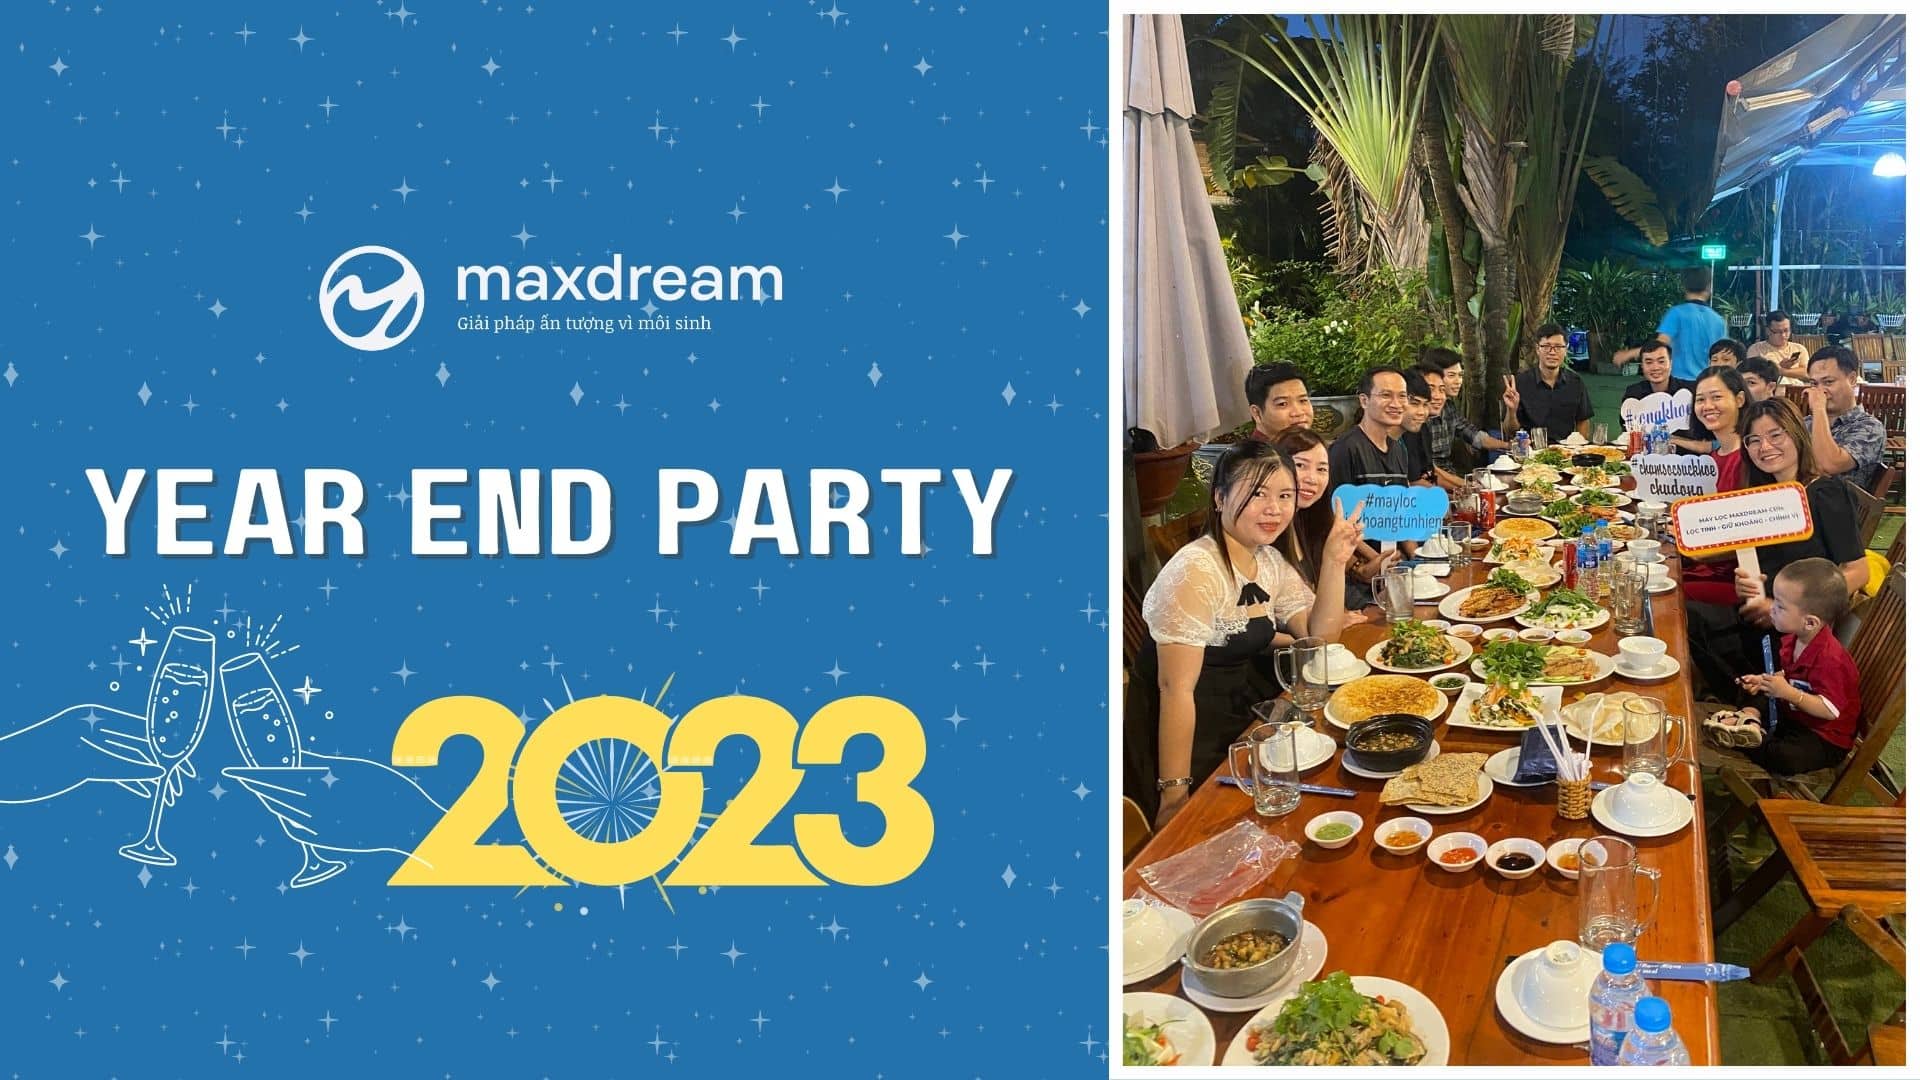 Year End Party 2022: Maxdream khép lại năm cũ với chặng hành trình khó quên